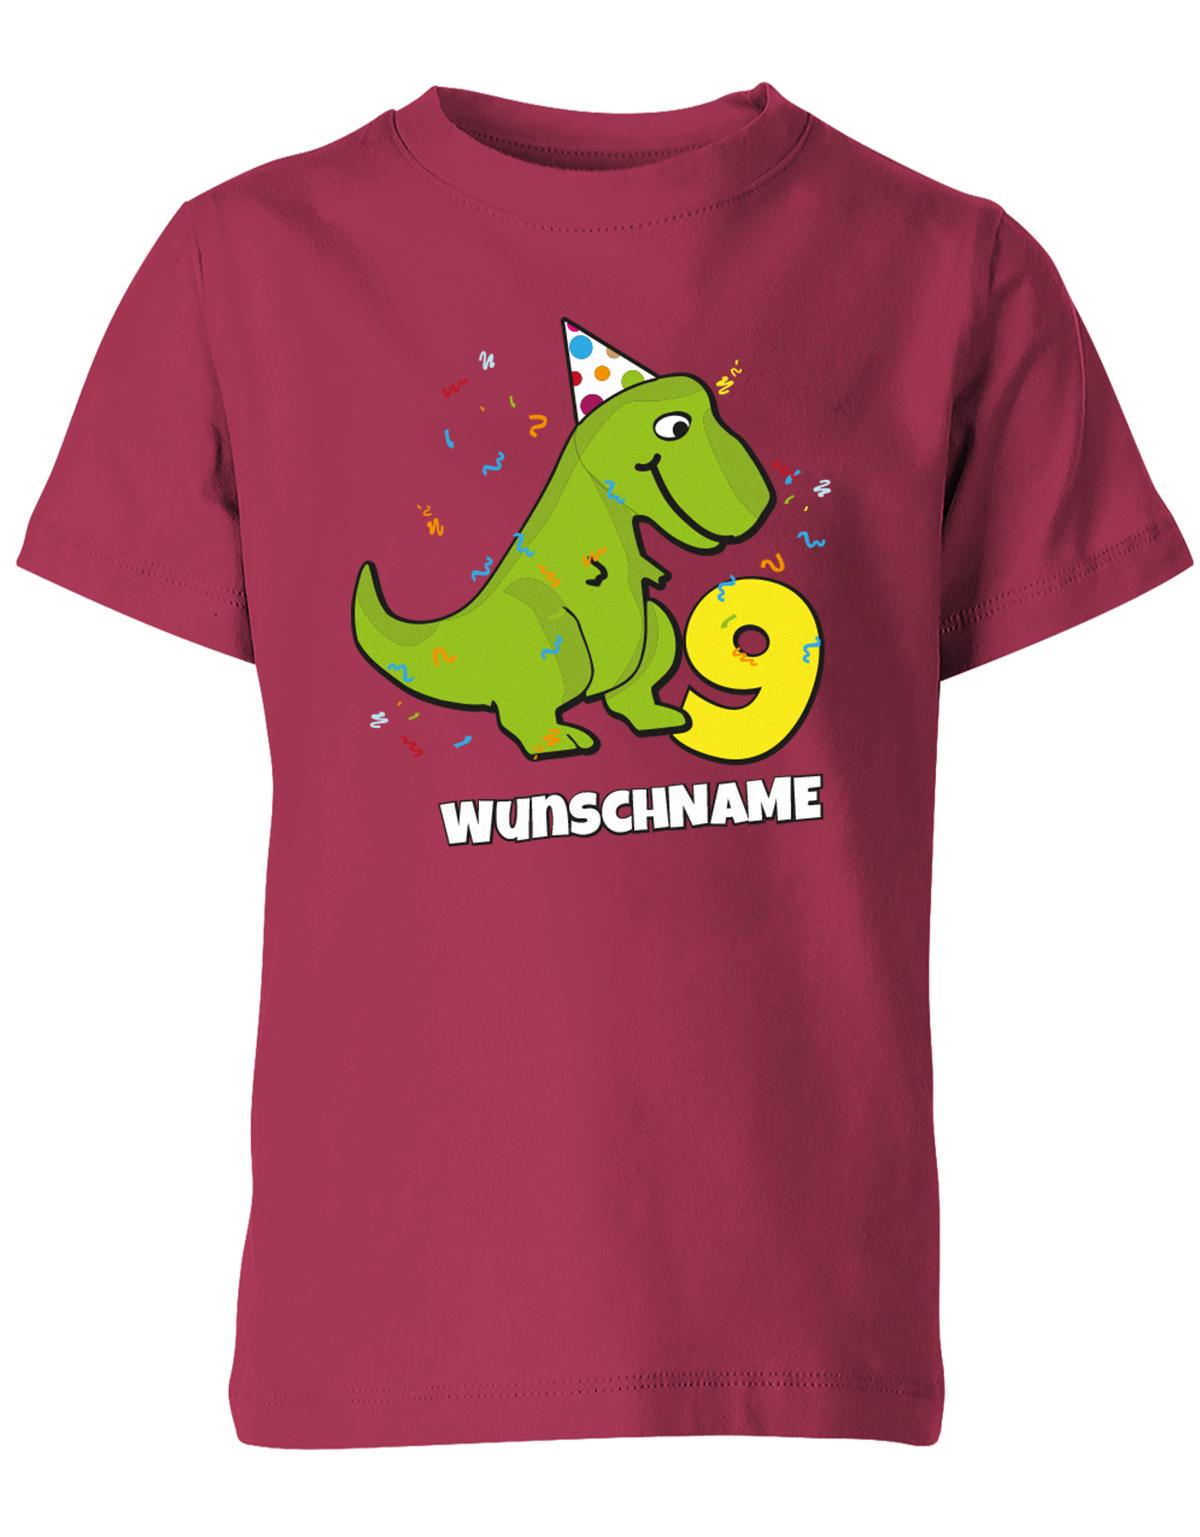 ich-bin-9-Dinosaurier-t-rex-wunschname-geburtstag-kinder-shirt-sorbet